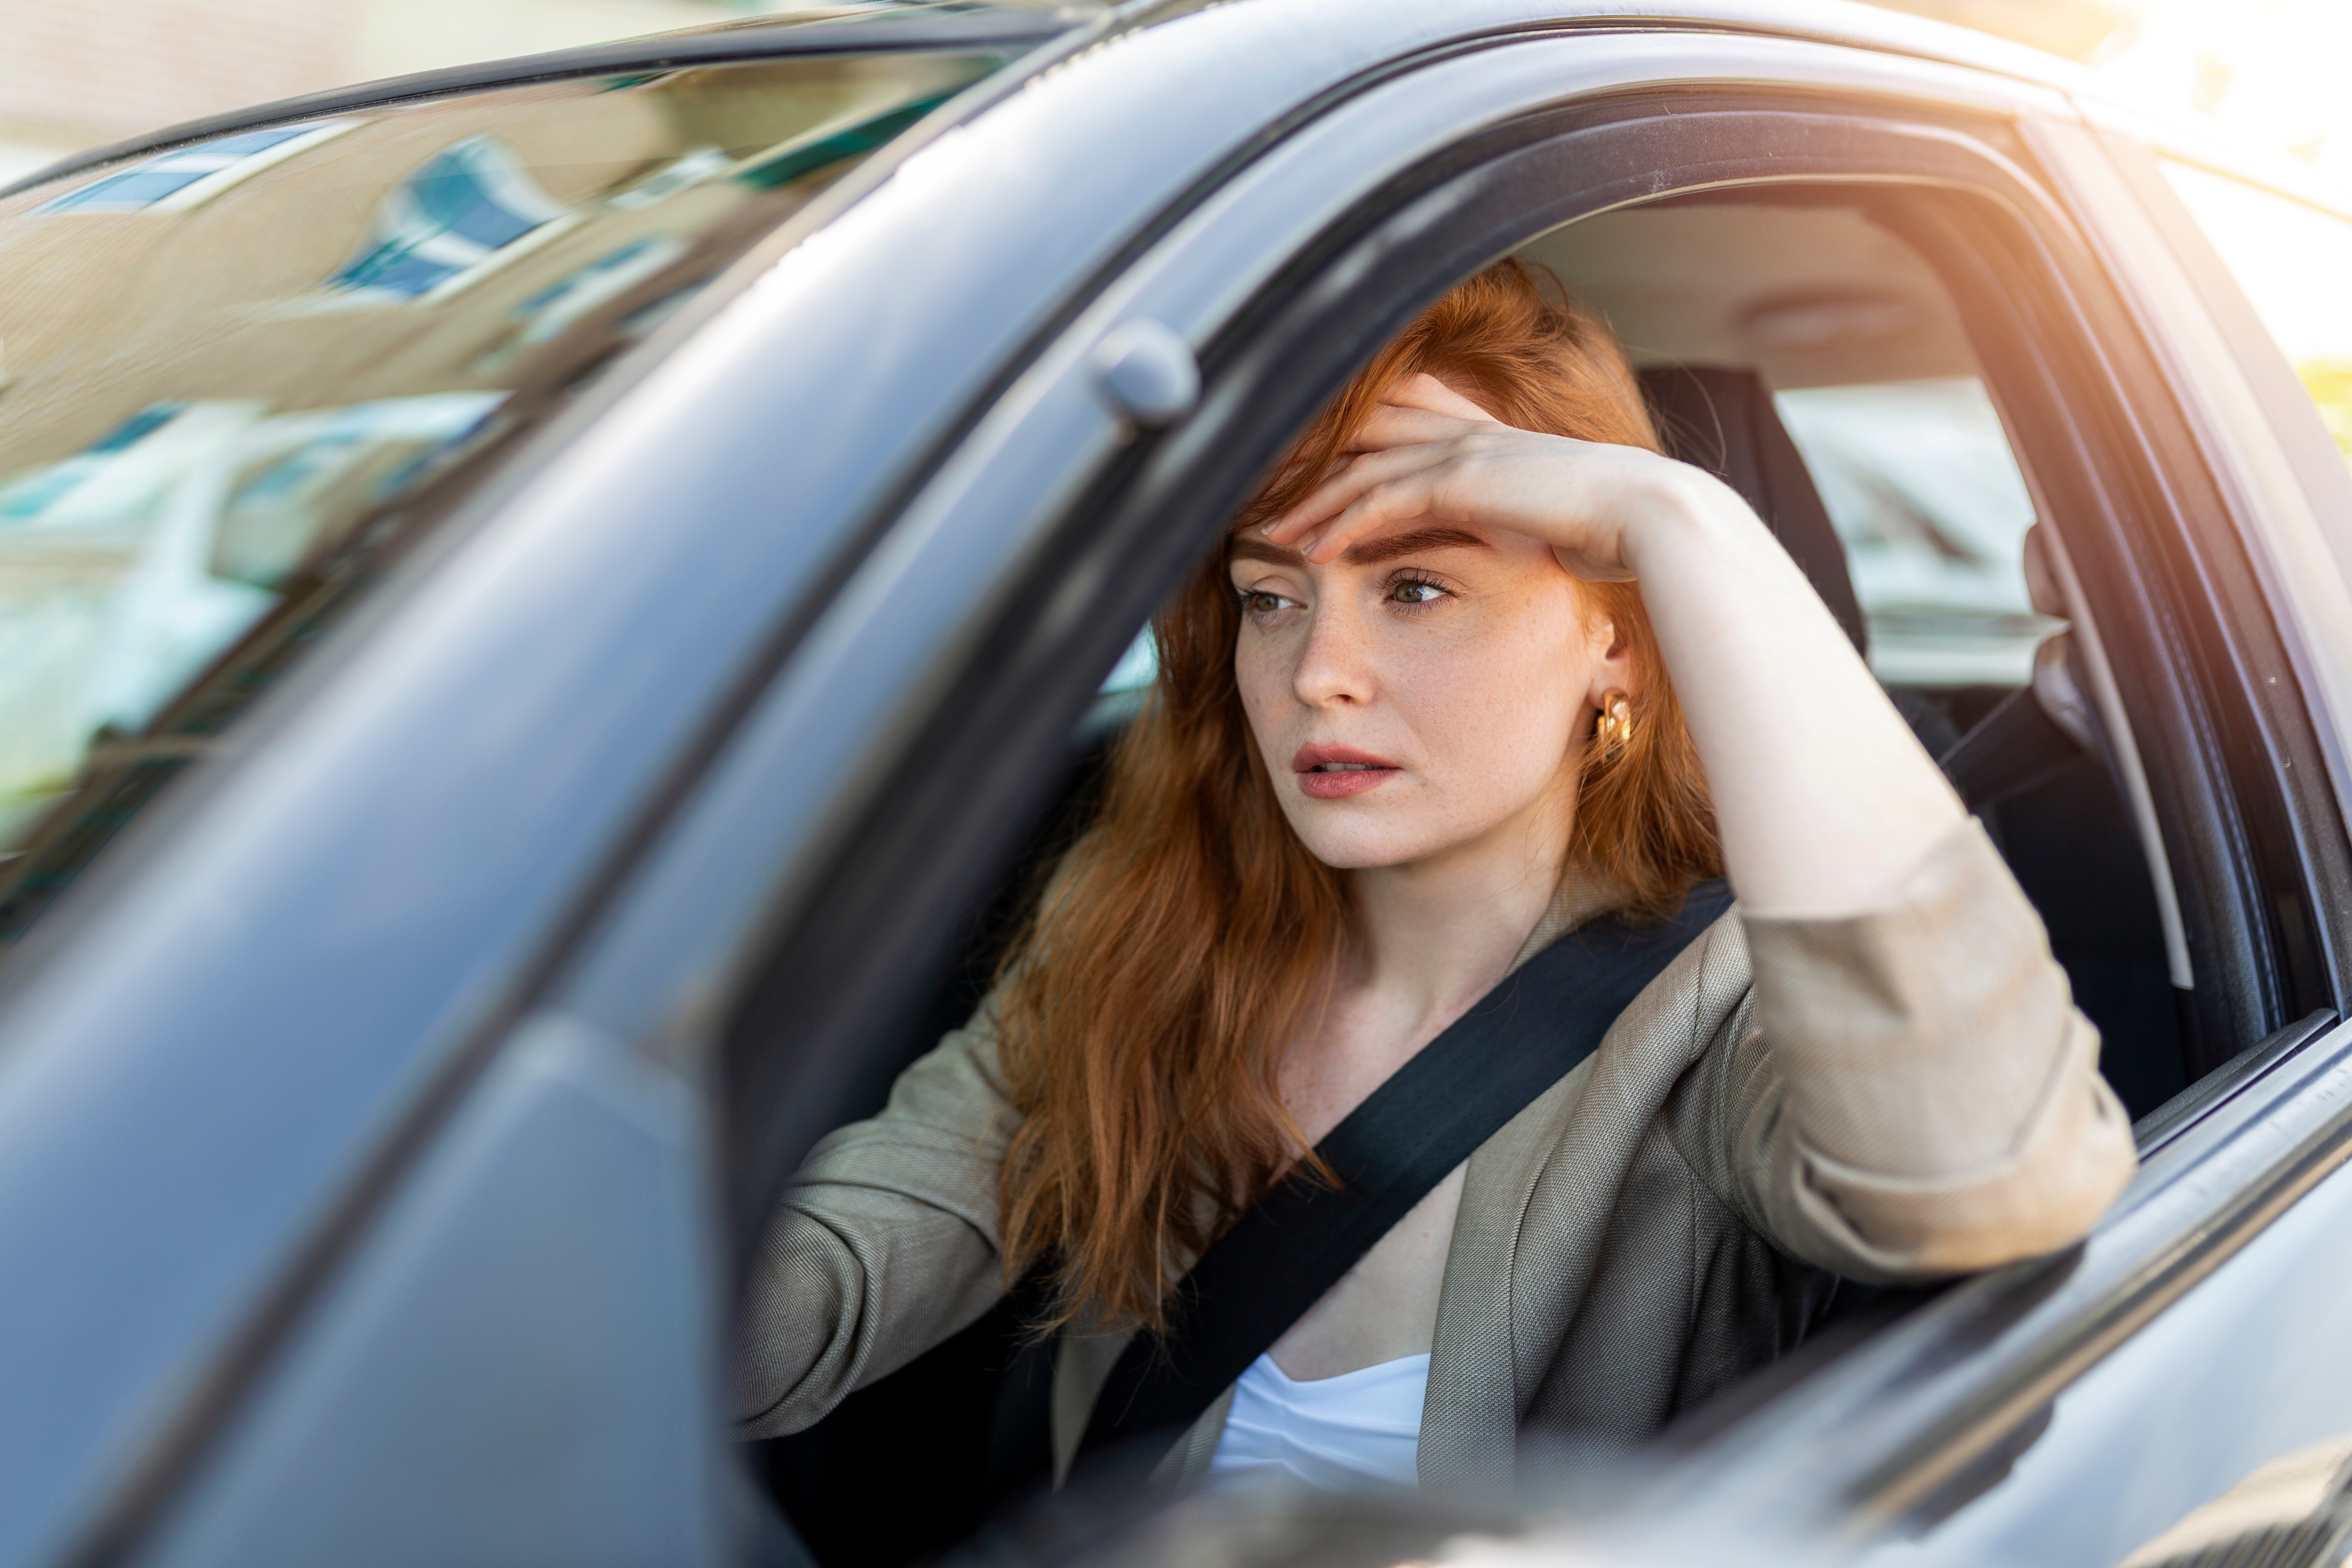 Eine Frau im Auto denkt nach | Quelle: Shutterstock